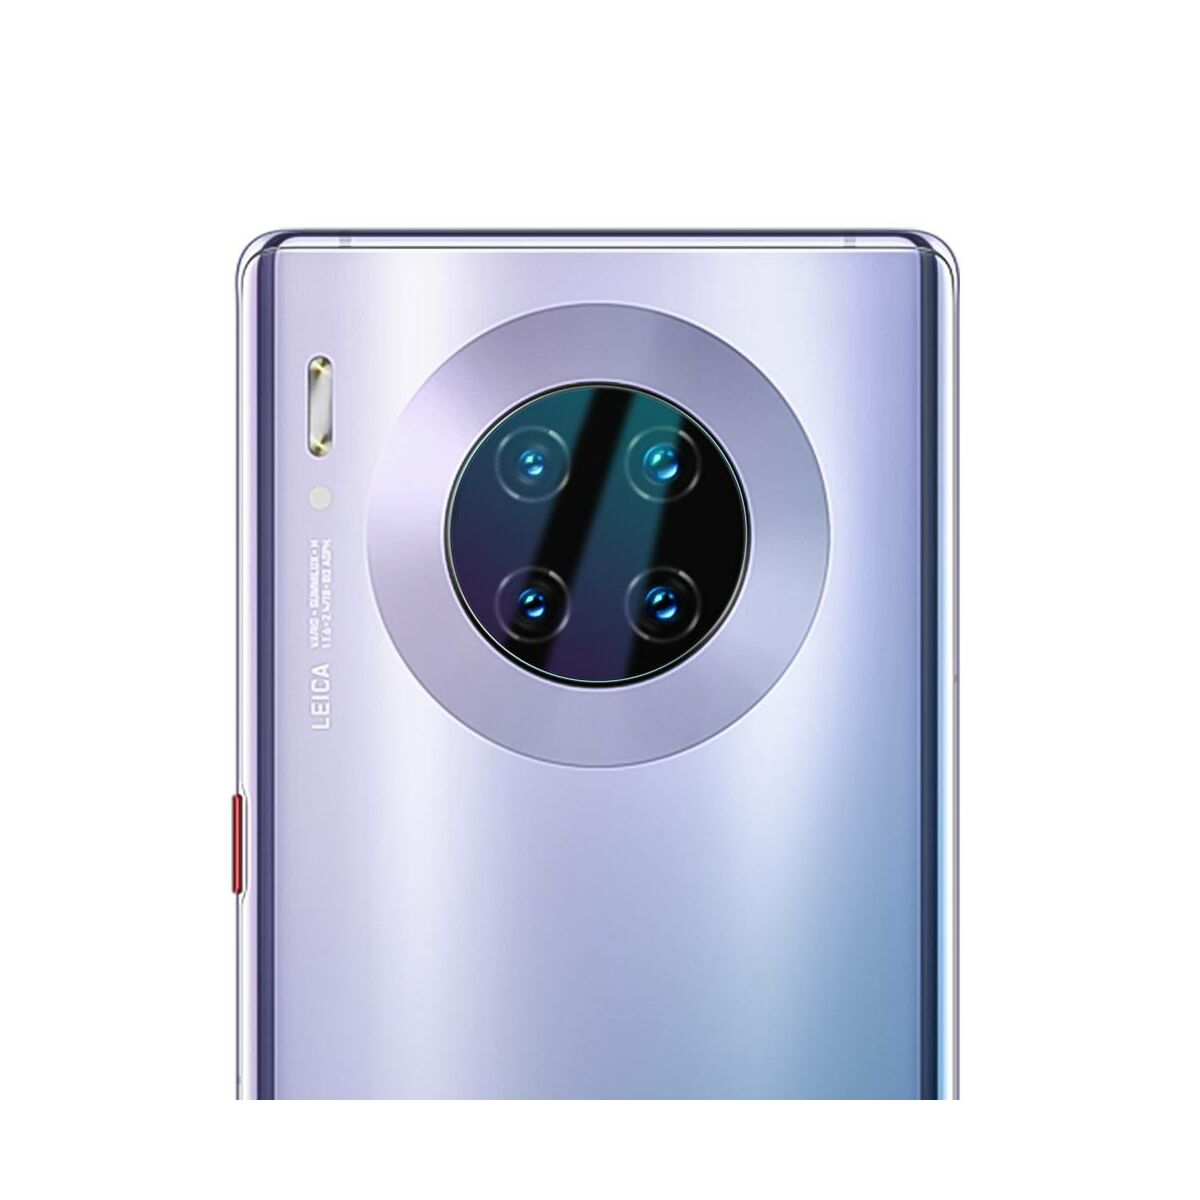 Kép 7/8 - Baseus Huawei Mate 30 / Mate 30 PRO 0.25 mm, Gem kamera lencse védőfólia, átlátszó (SGHWMATE30-JT02)